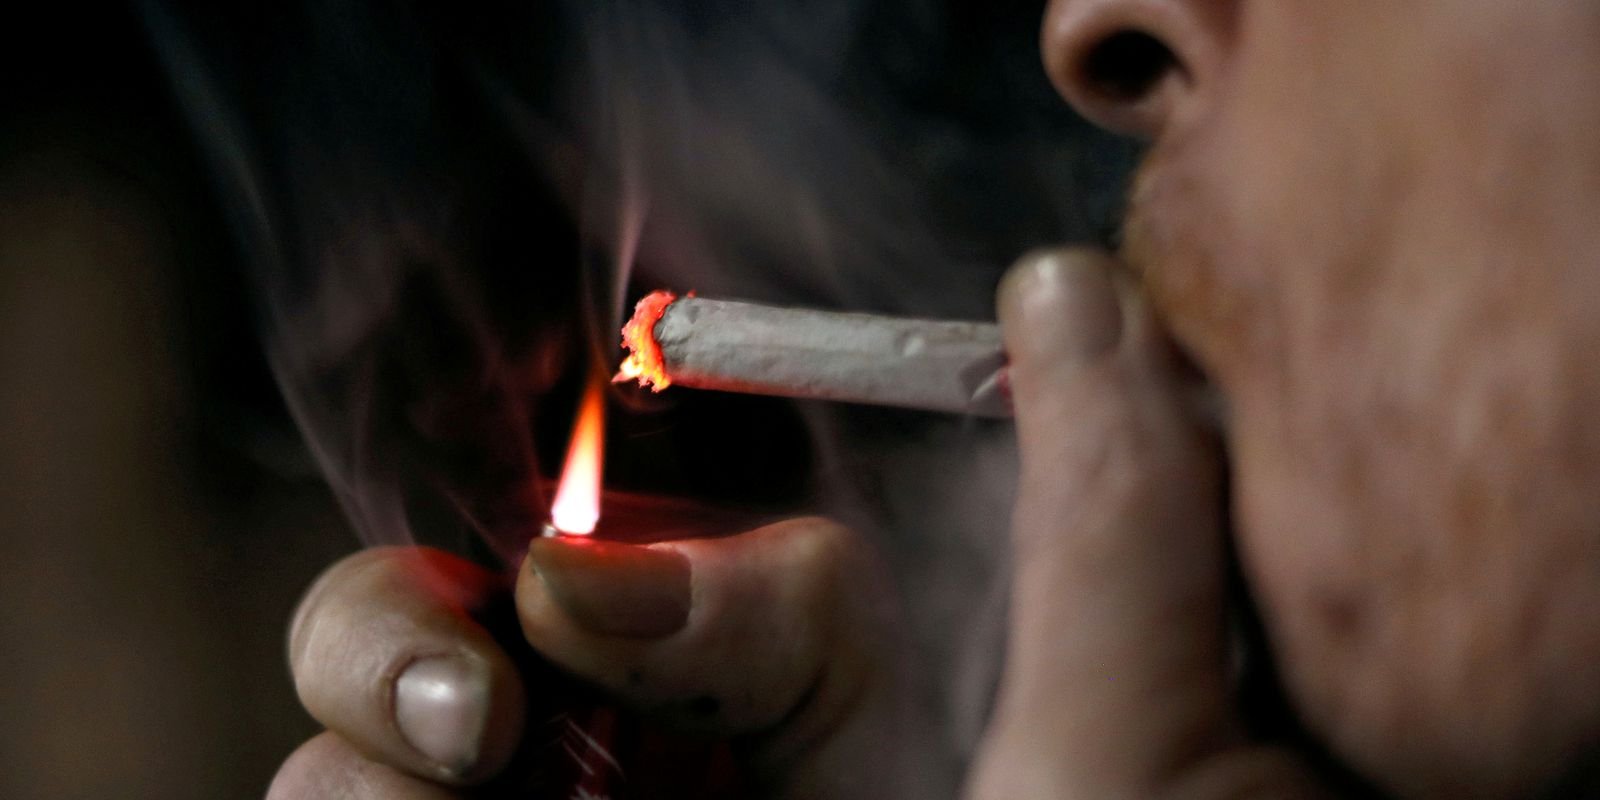 especialistas-alertam:-fumo-e-a-maior-causa-de-cancer-de-pulmao